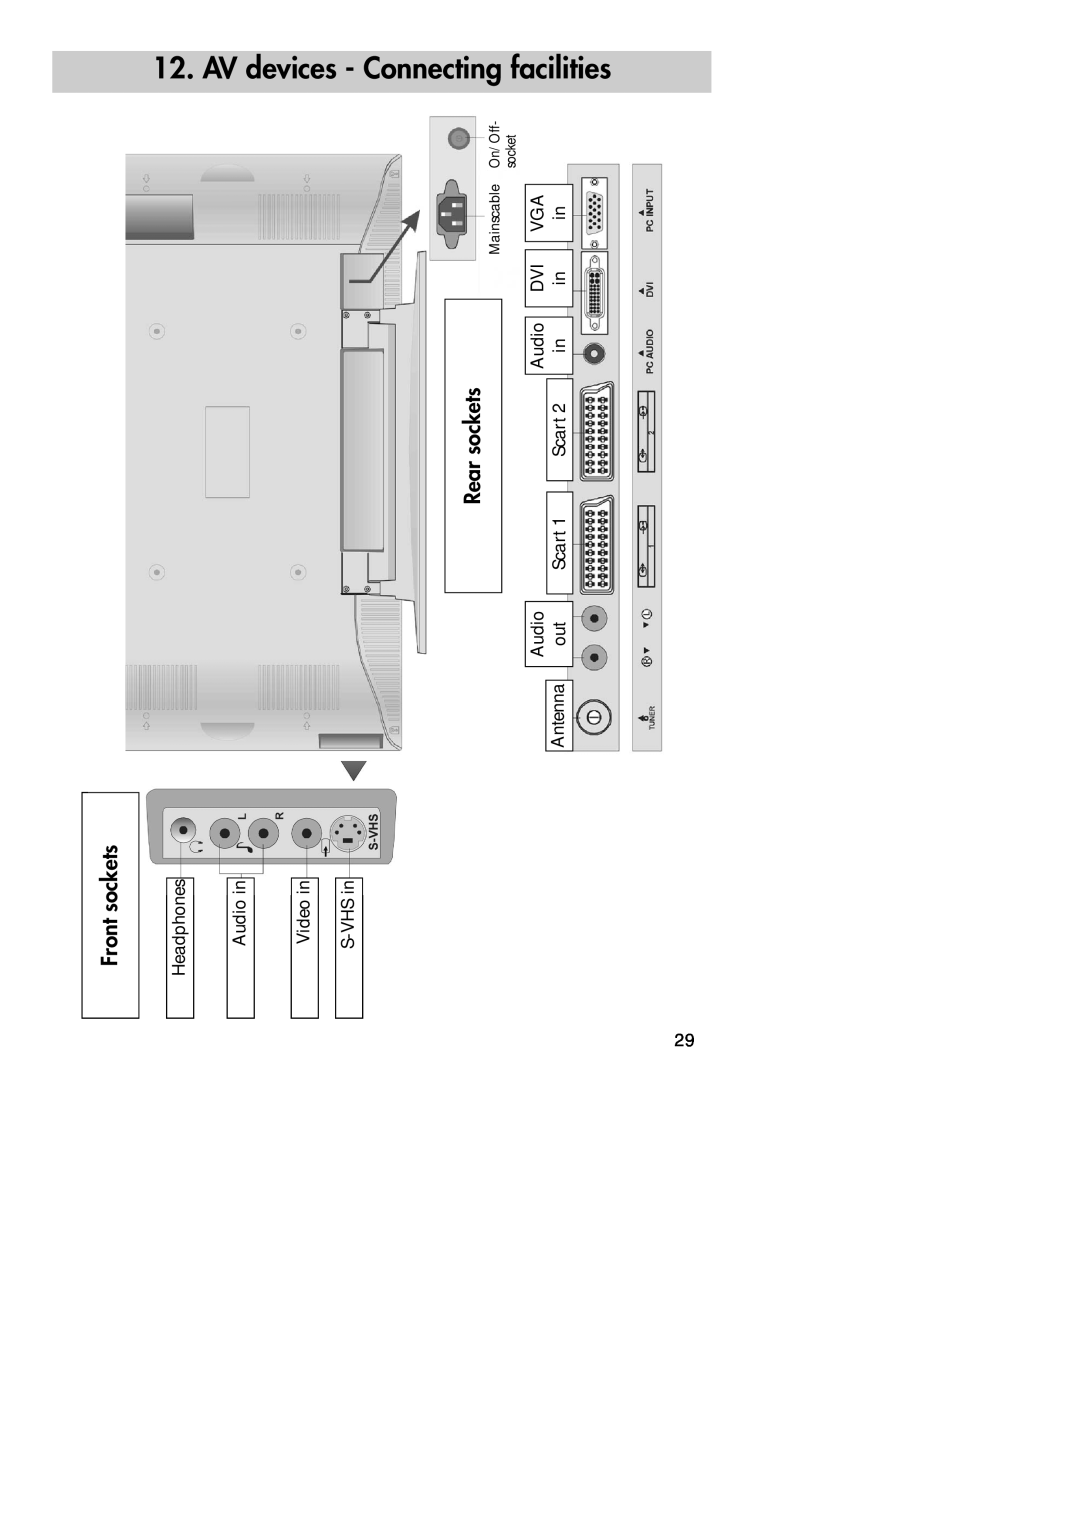 Metz 30 LCD-TV PIP, 30 TL 55 manual AV devices - Connecting facilities, Front sockets, Rear sockets 